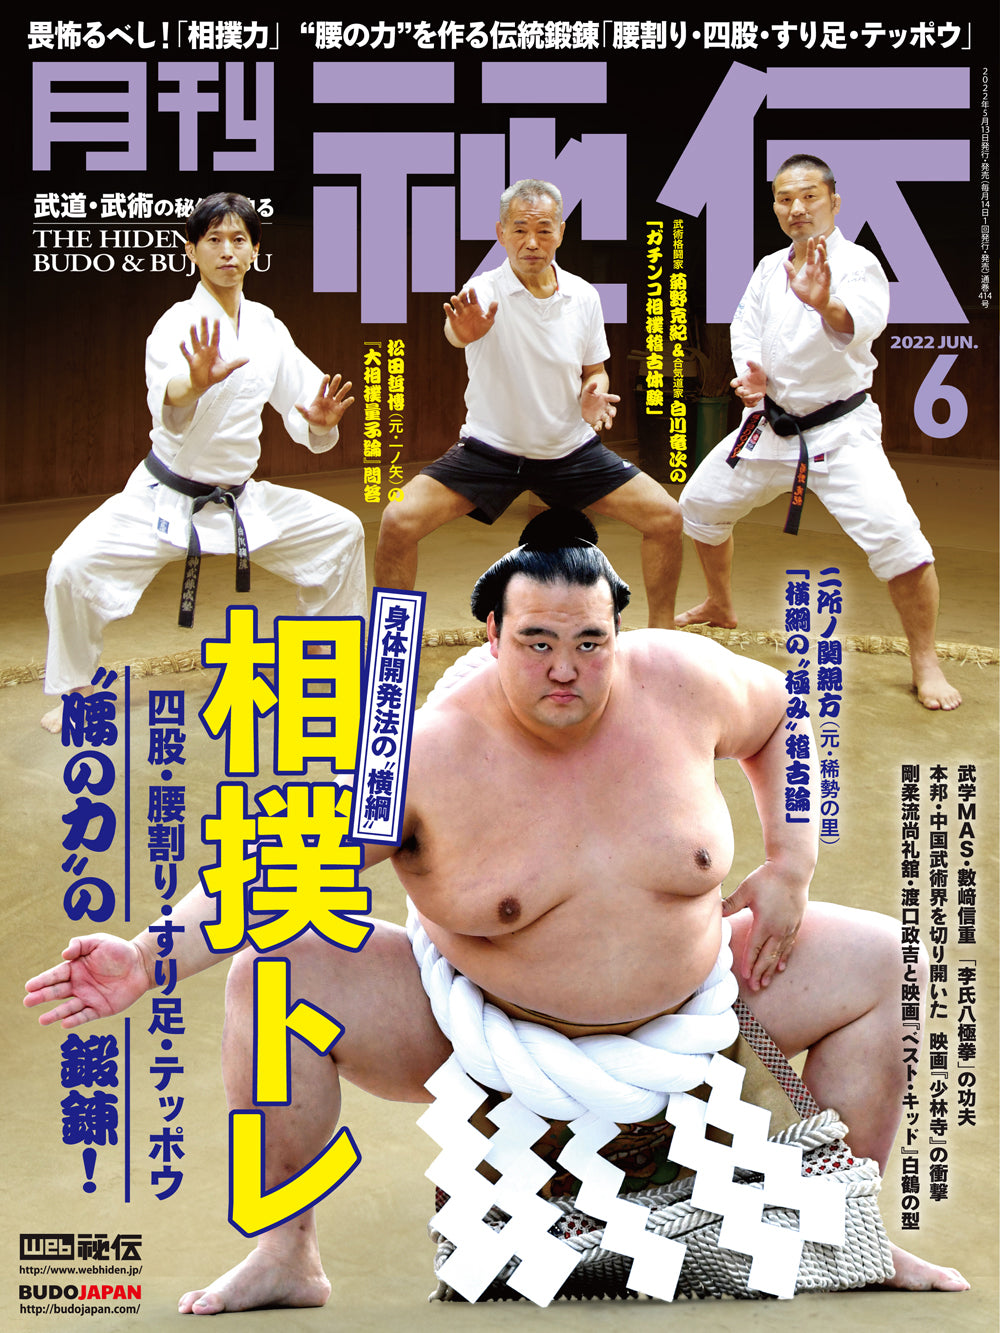 Hiden Budo & Bujutsu Magazine June 2022